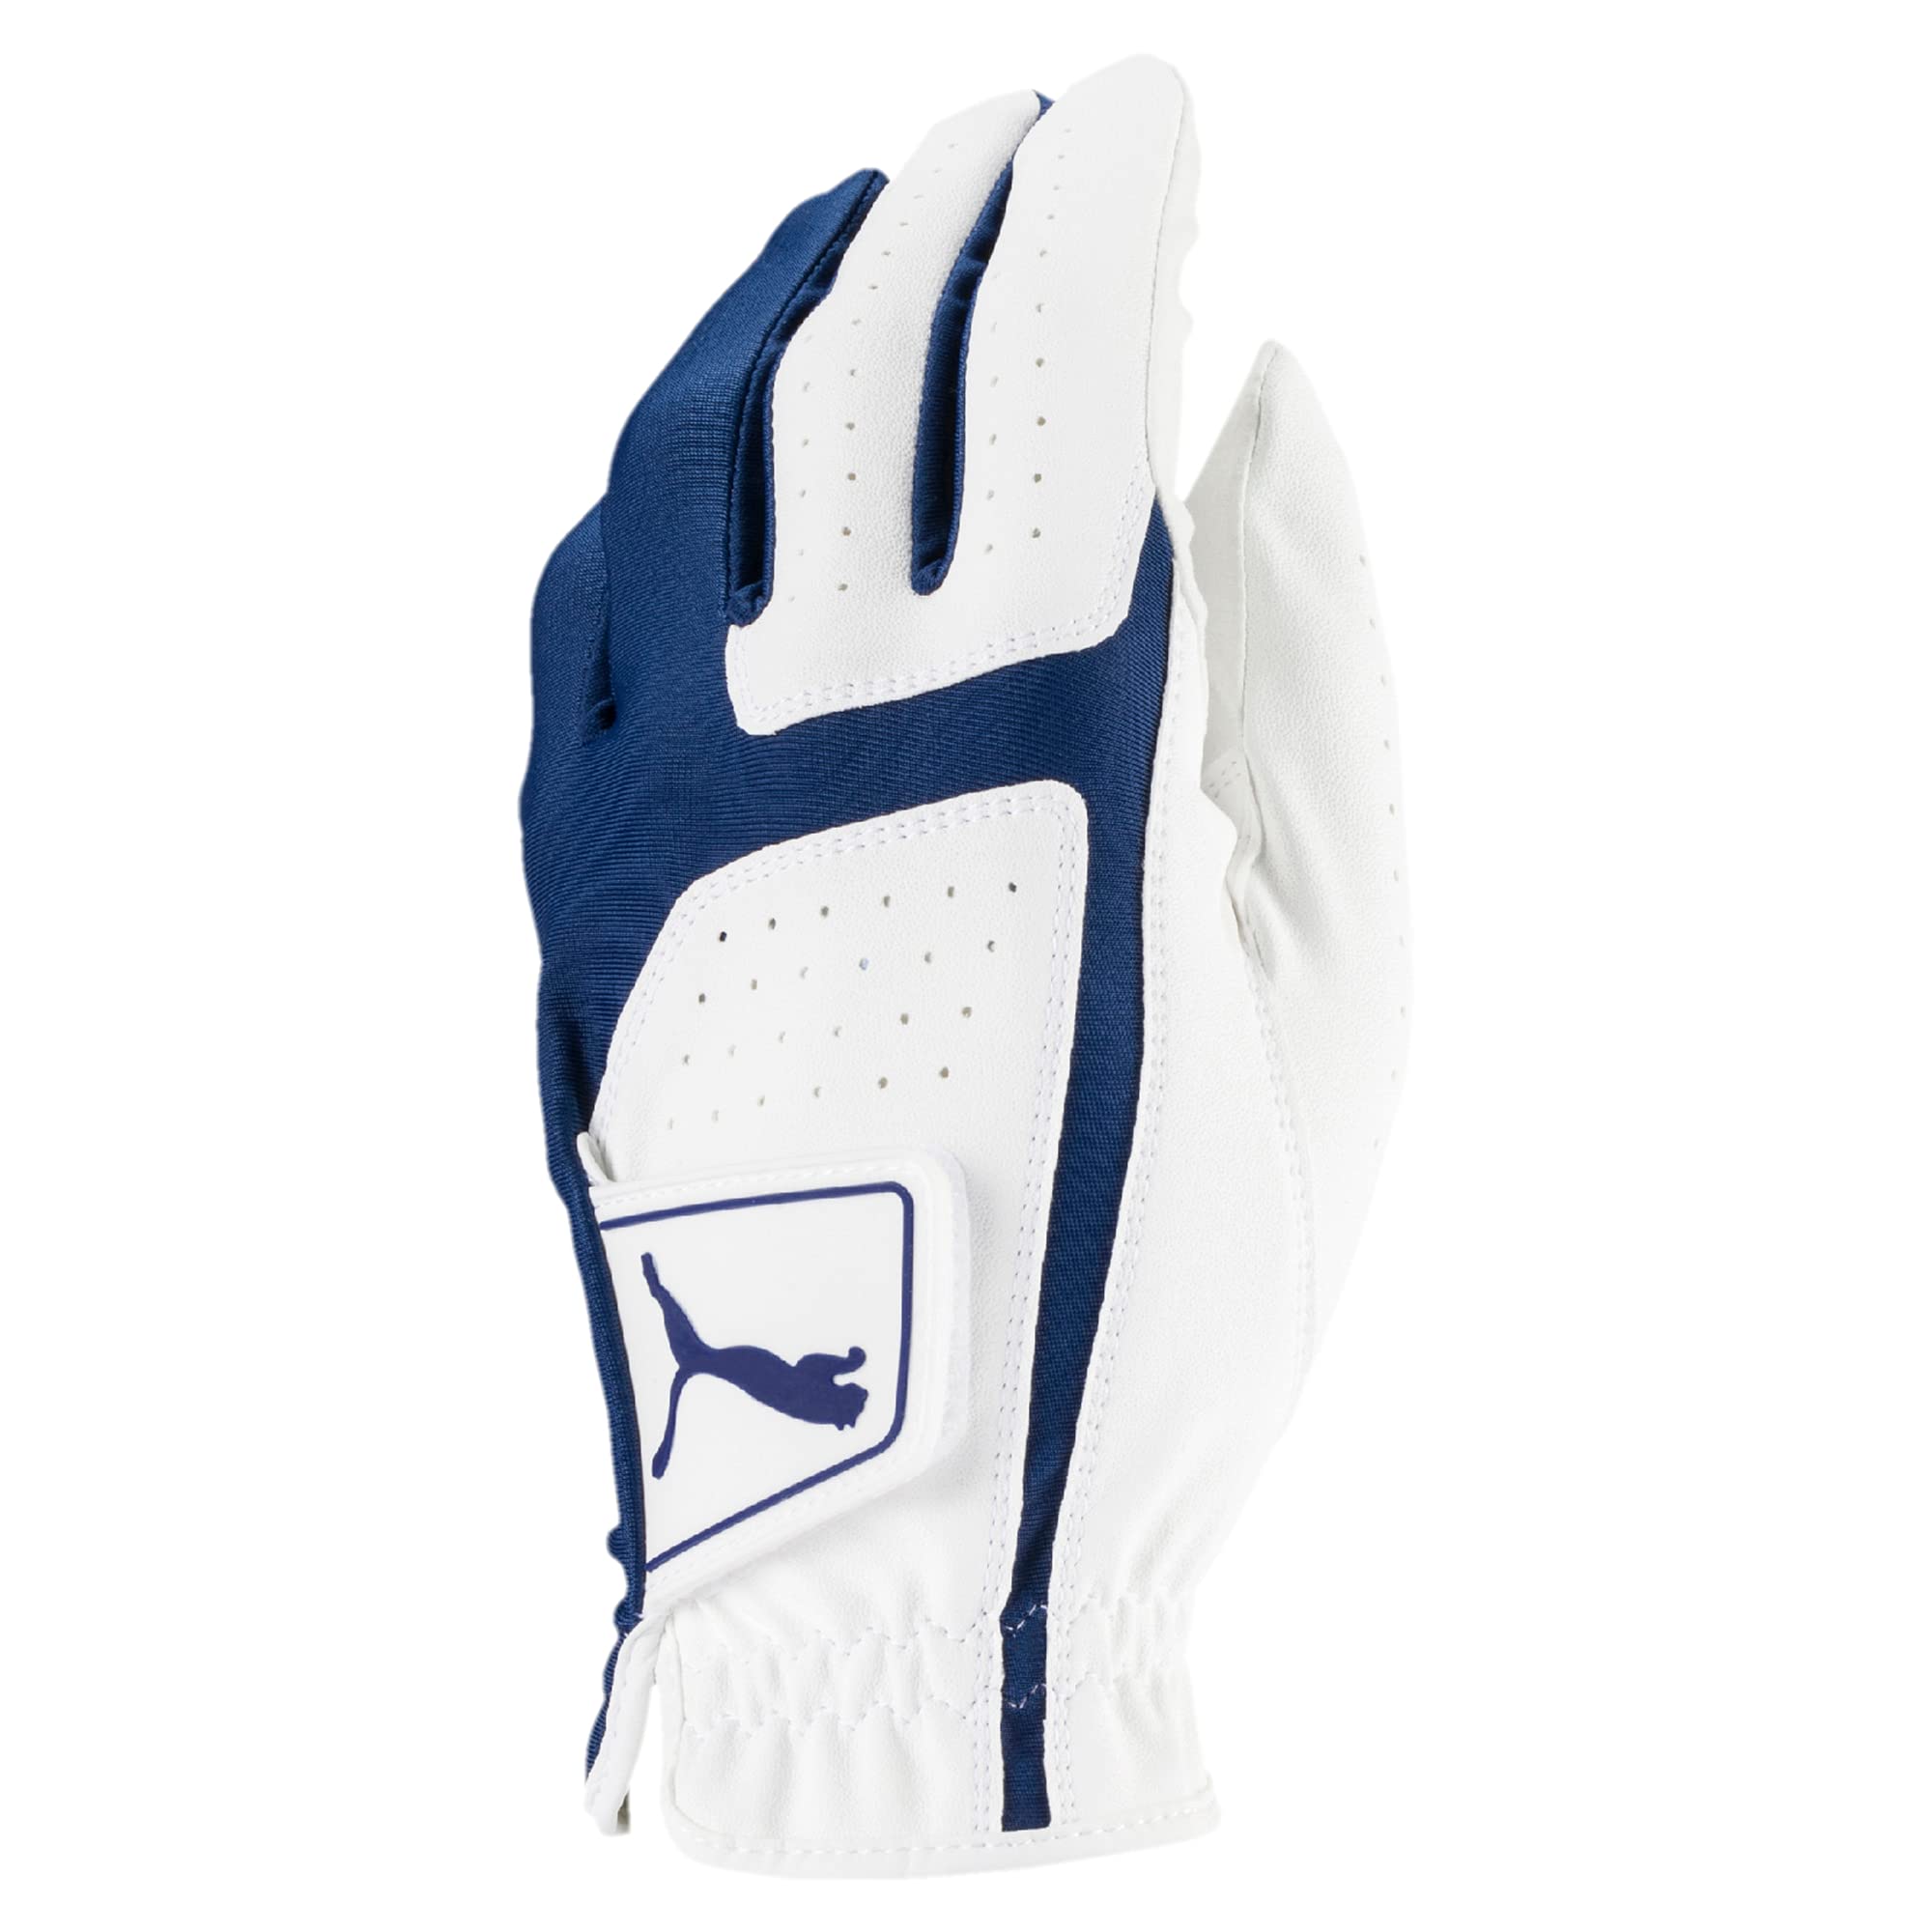 Puma Golf Mens Flexlite Golf Glove (Bright White-Monaco Blue, X-Large, Left Hand)